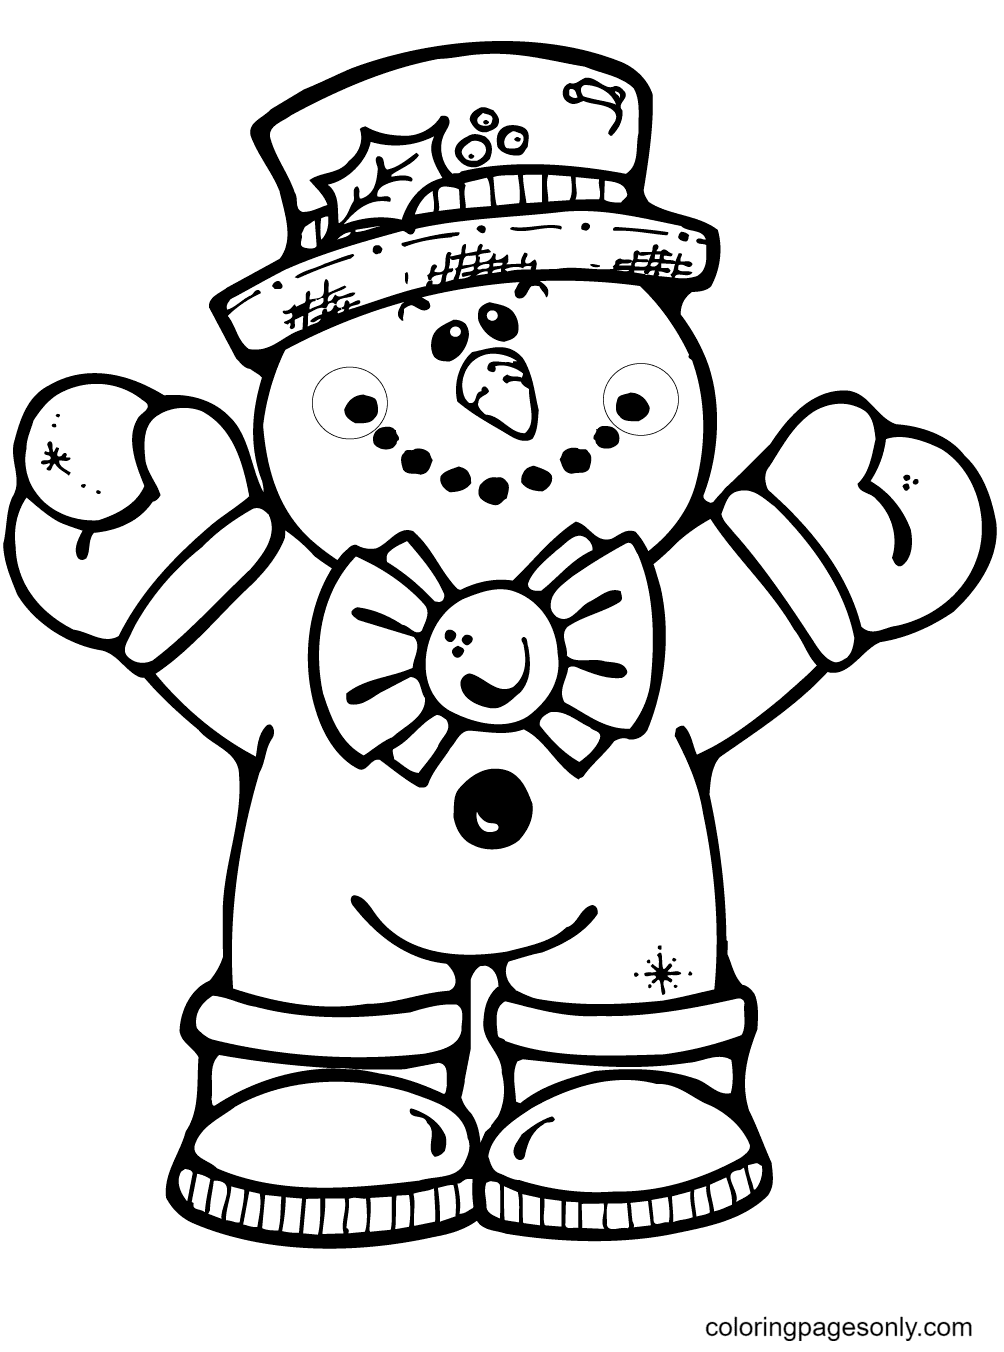 Câliner le bonhomme de neige de Snowman